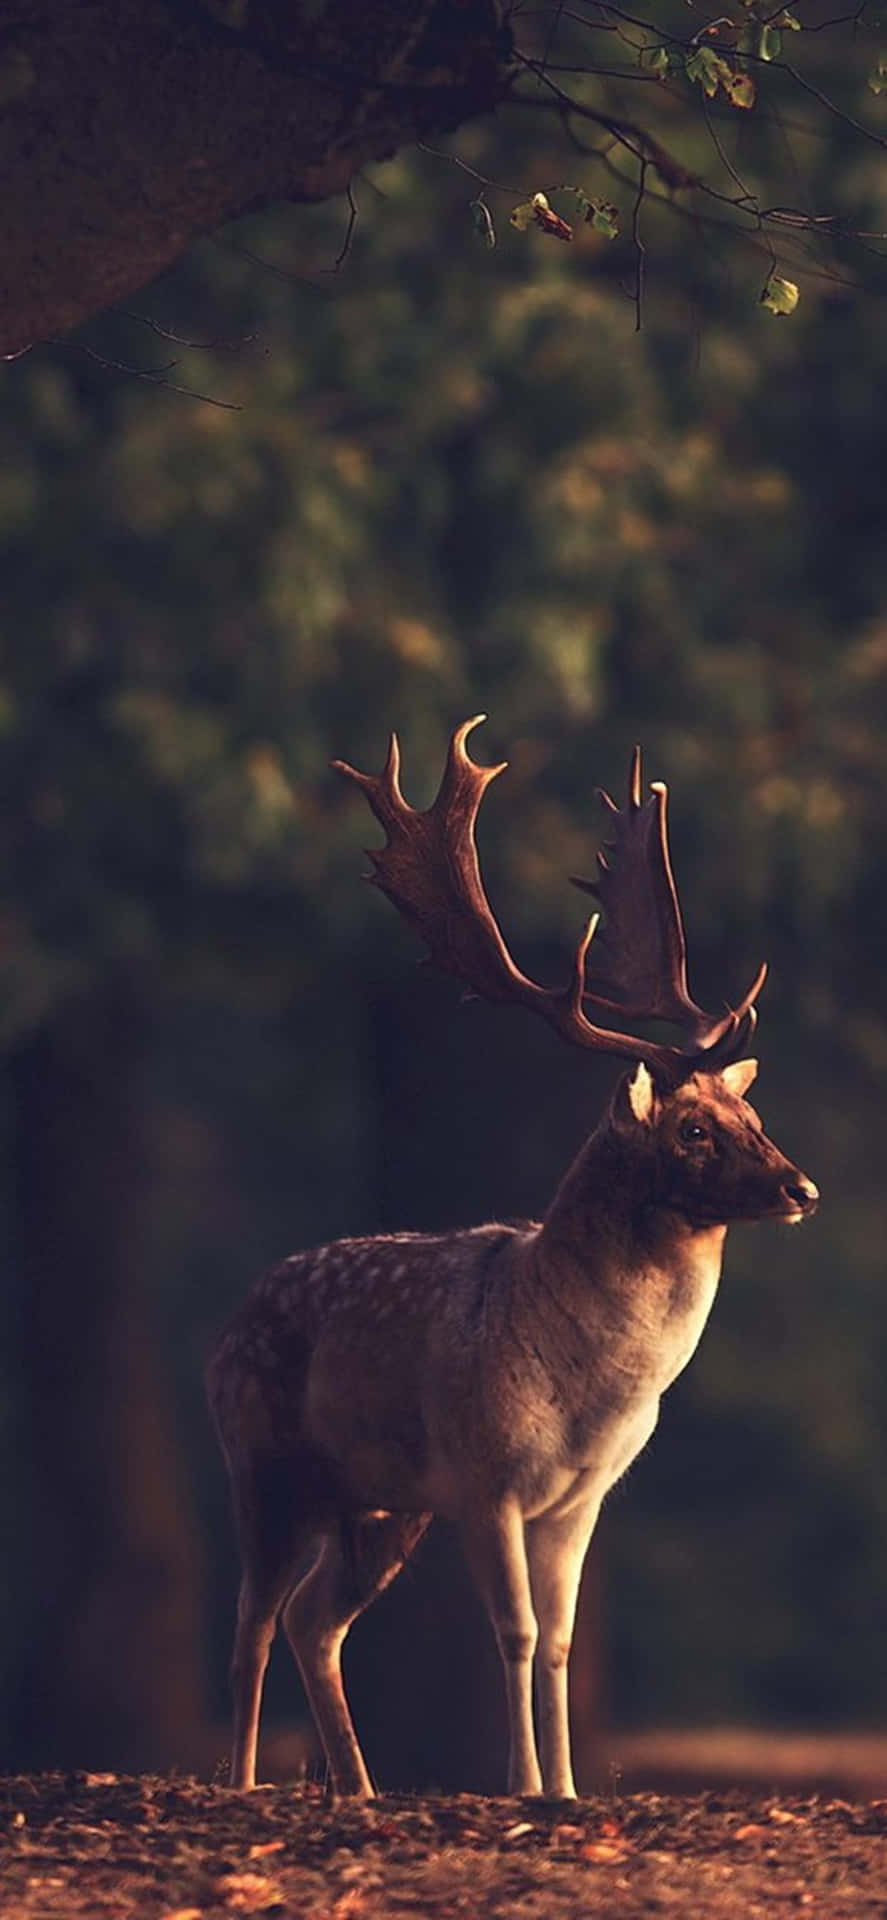 A deer standing in the forest - Deer